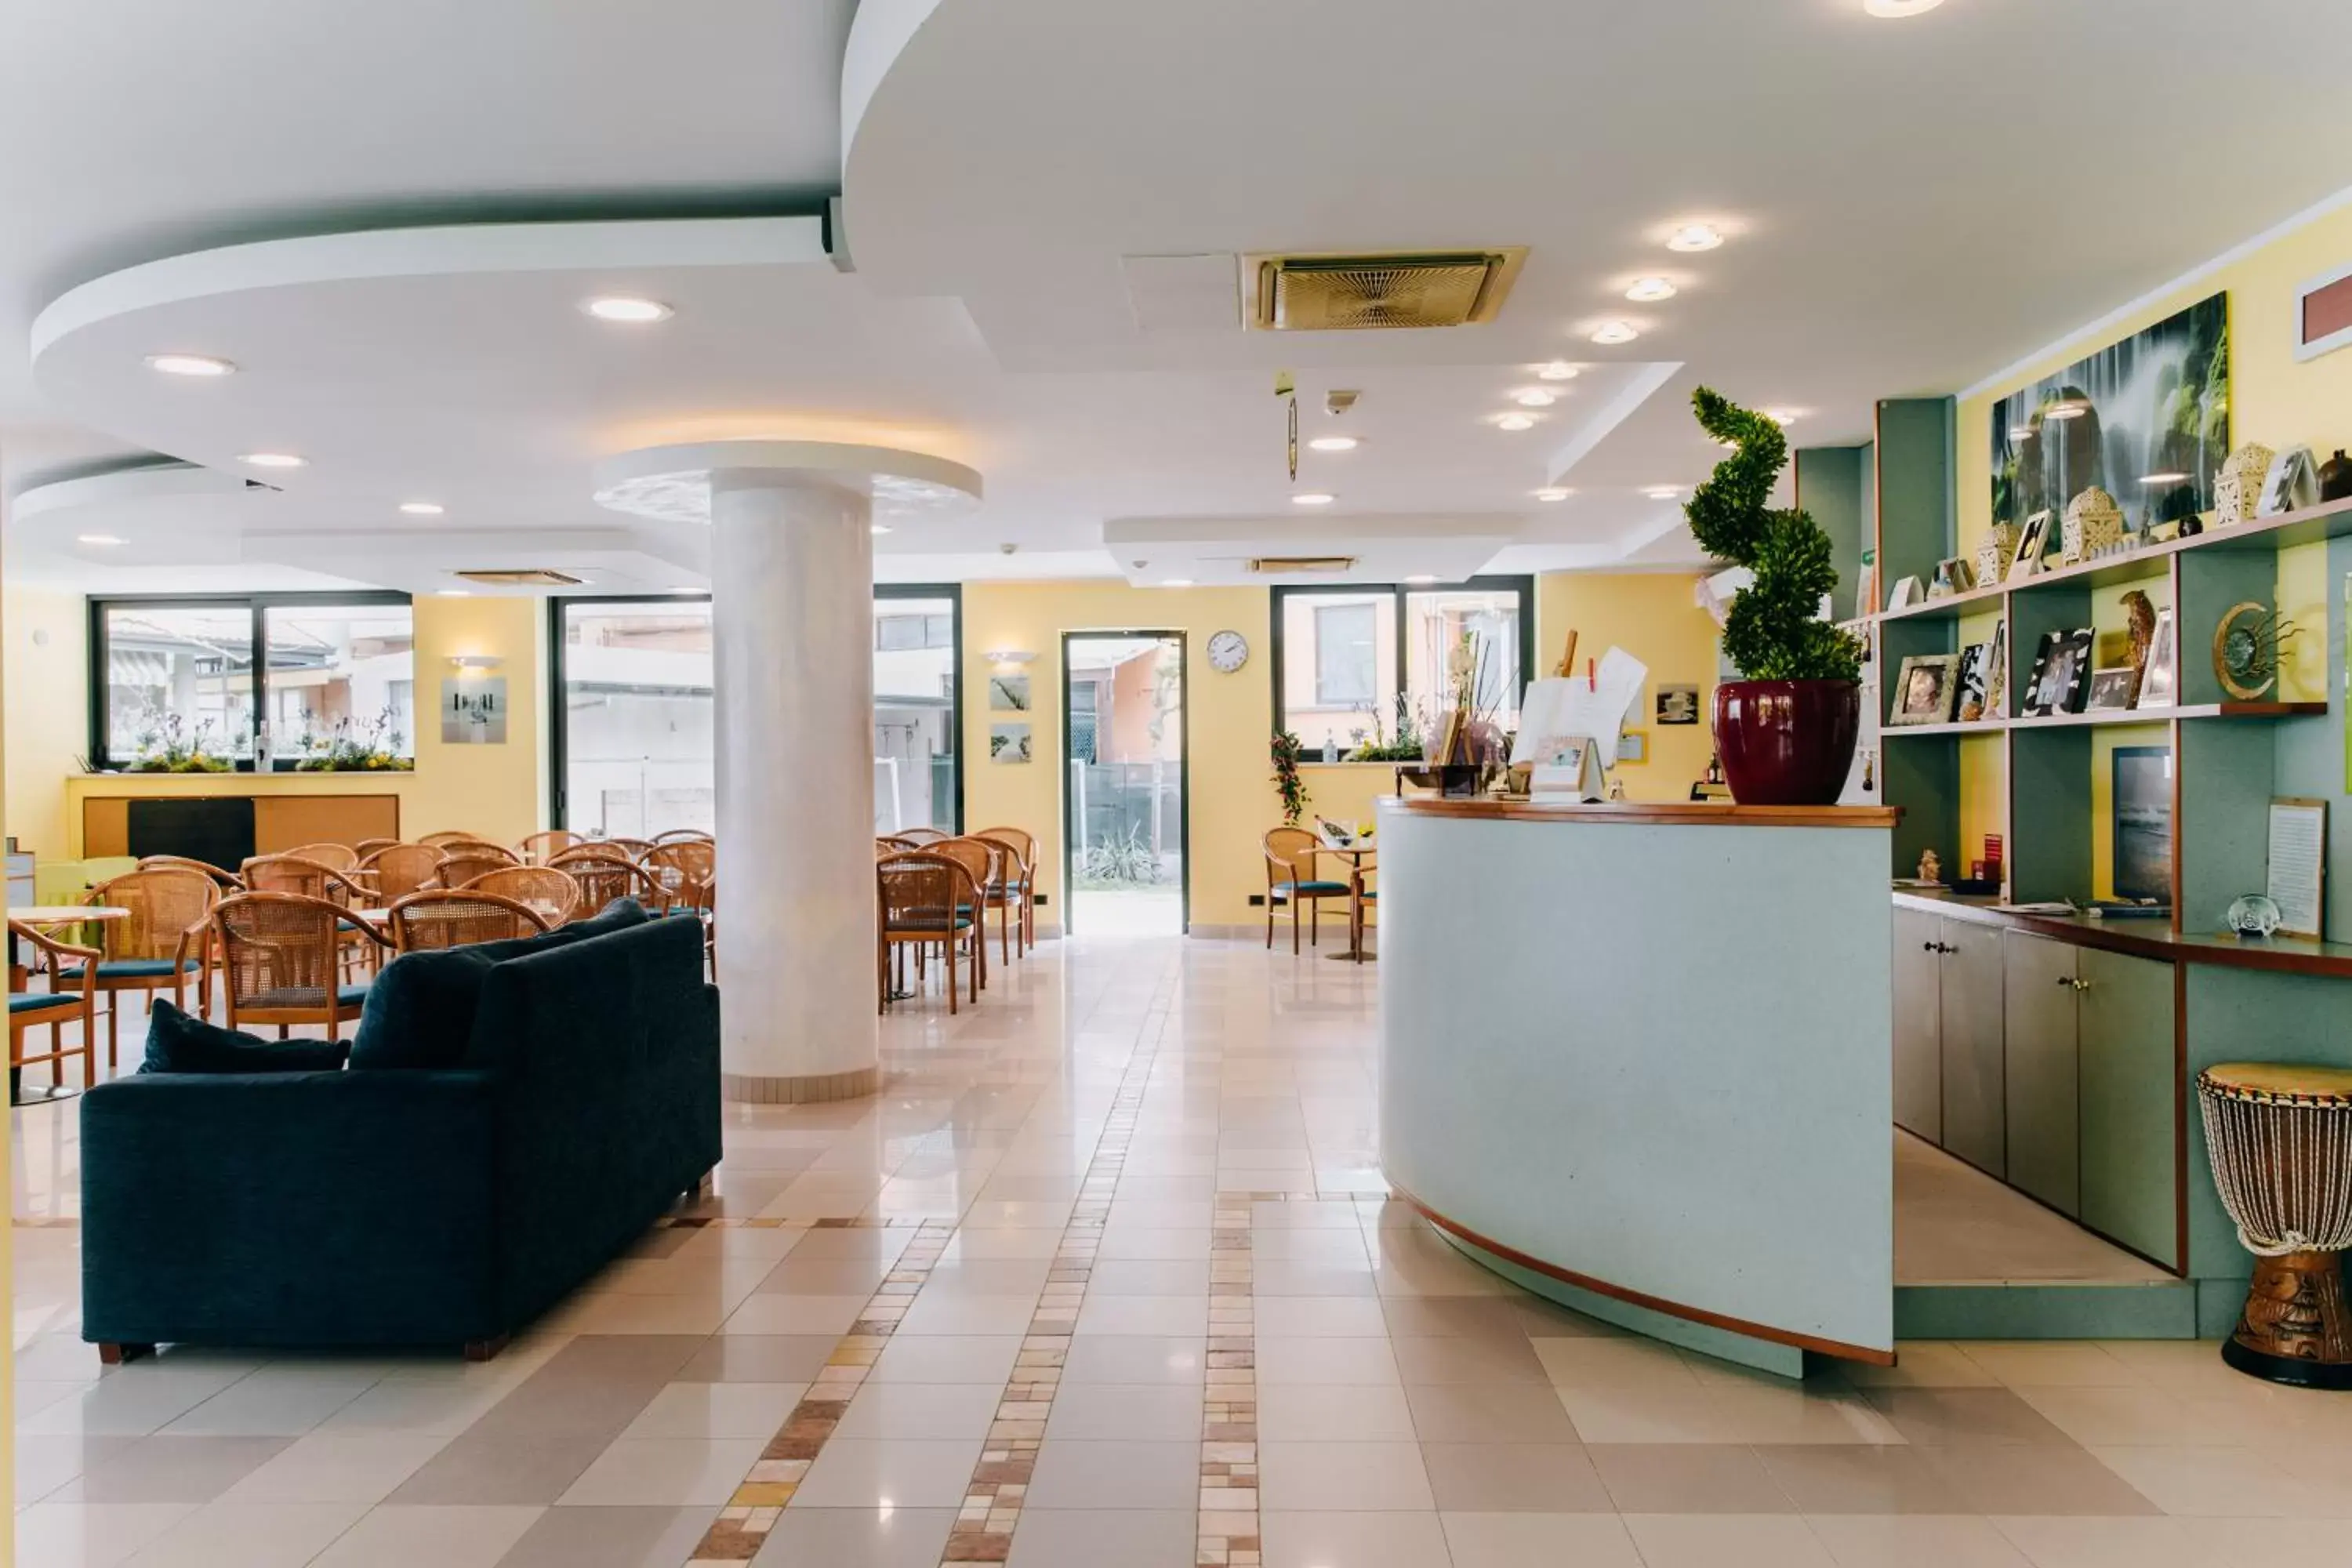 Lobby or reception in Hotel Villa Claudia